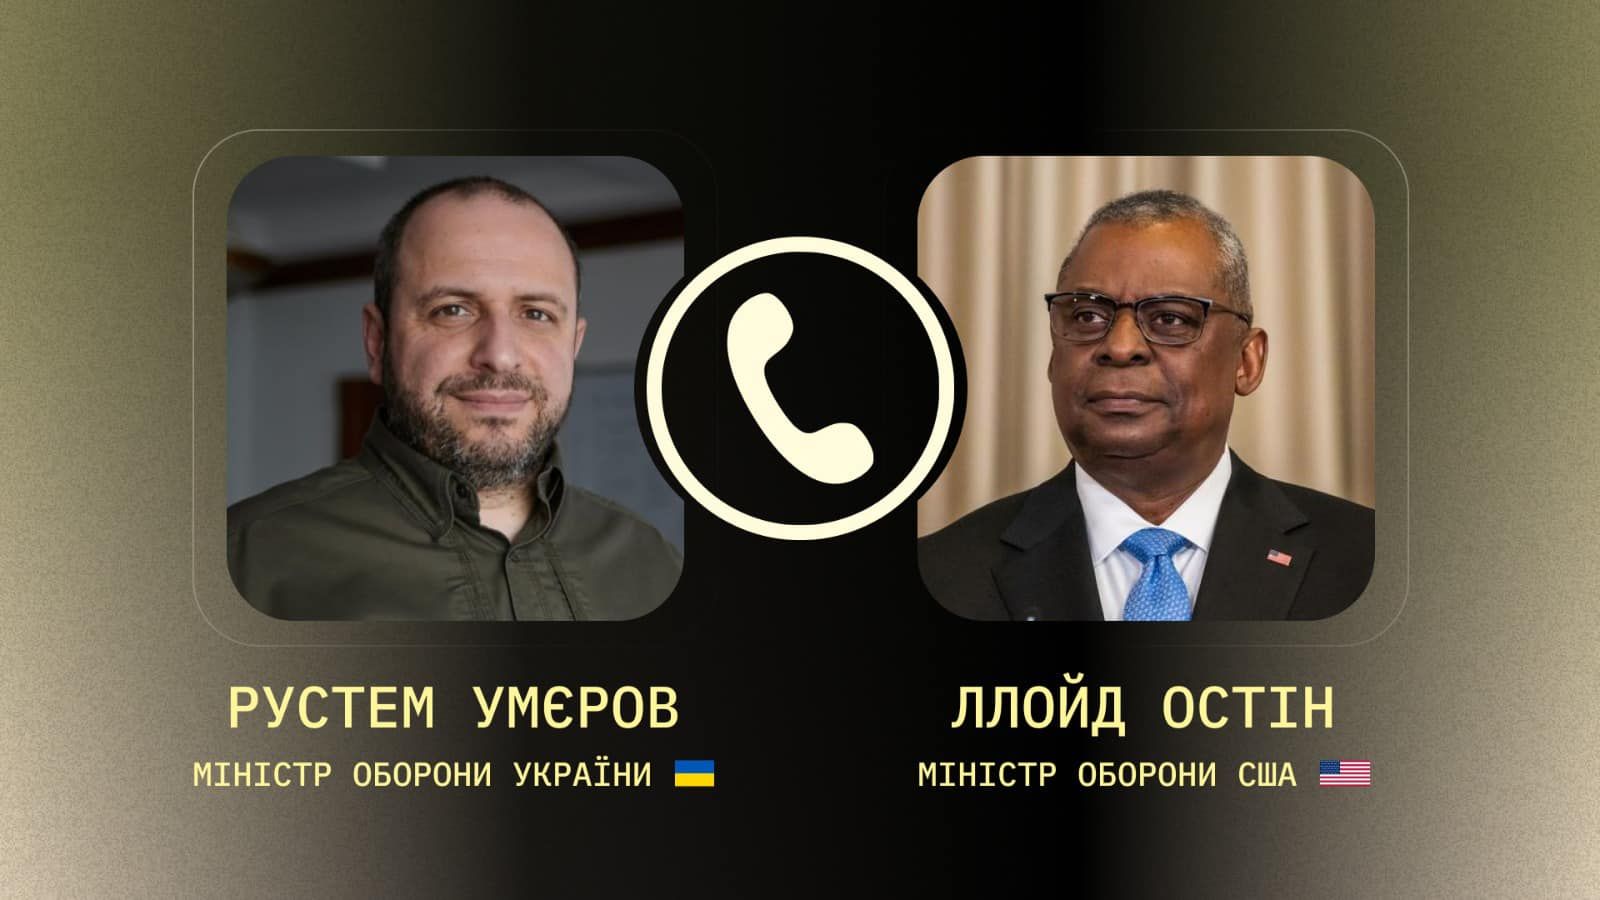 Рустем Умєров та Ллойд Остін вперше говорили про потреби України.